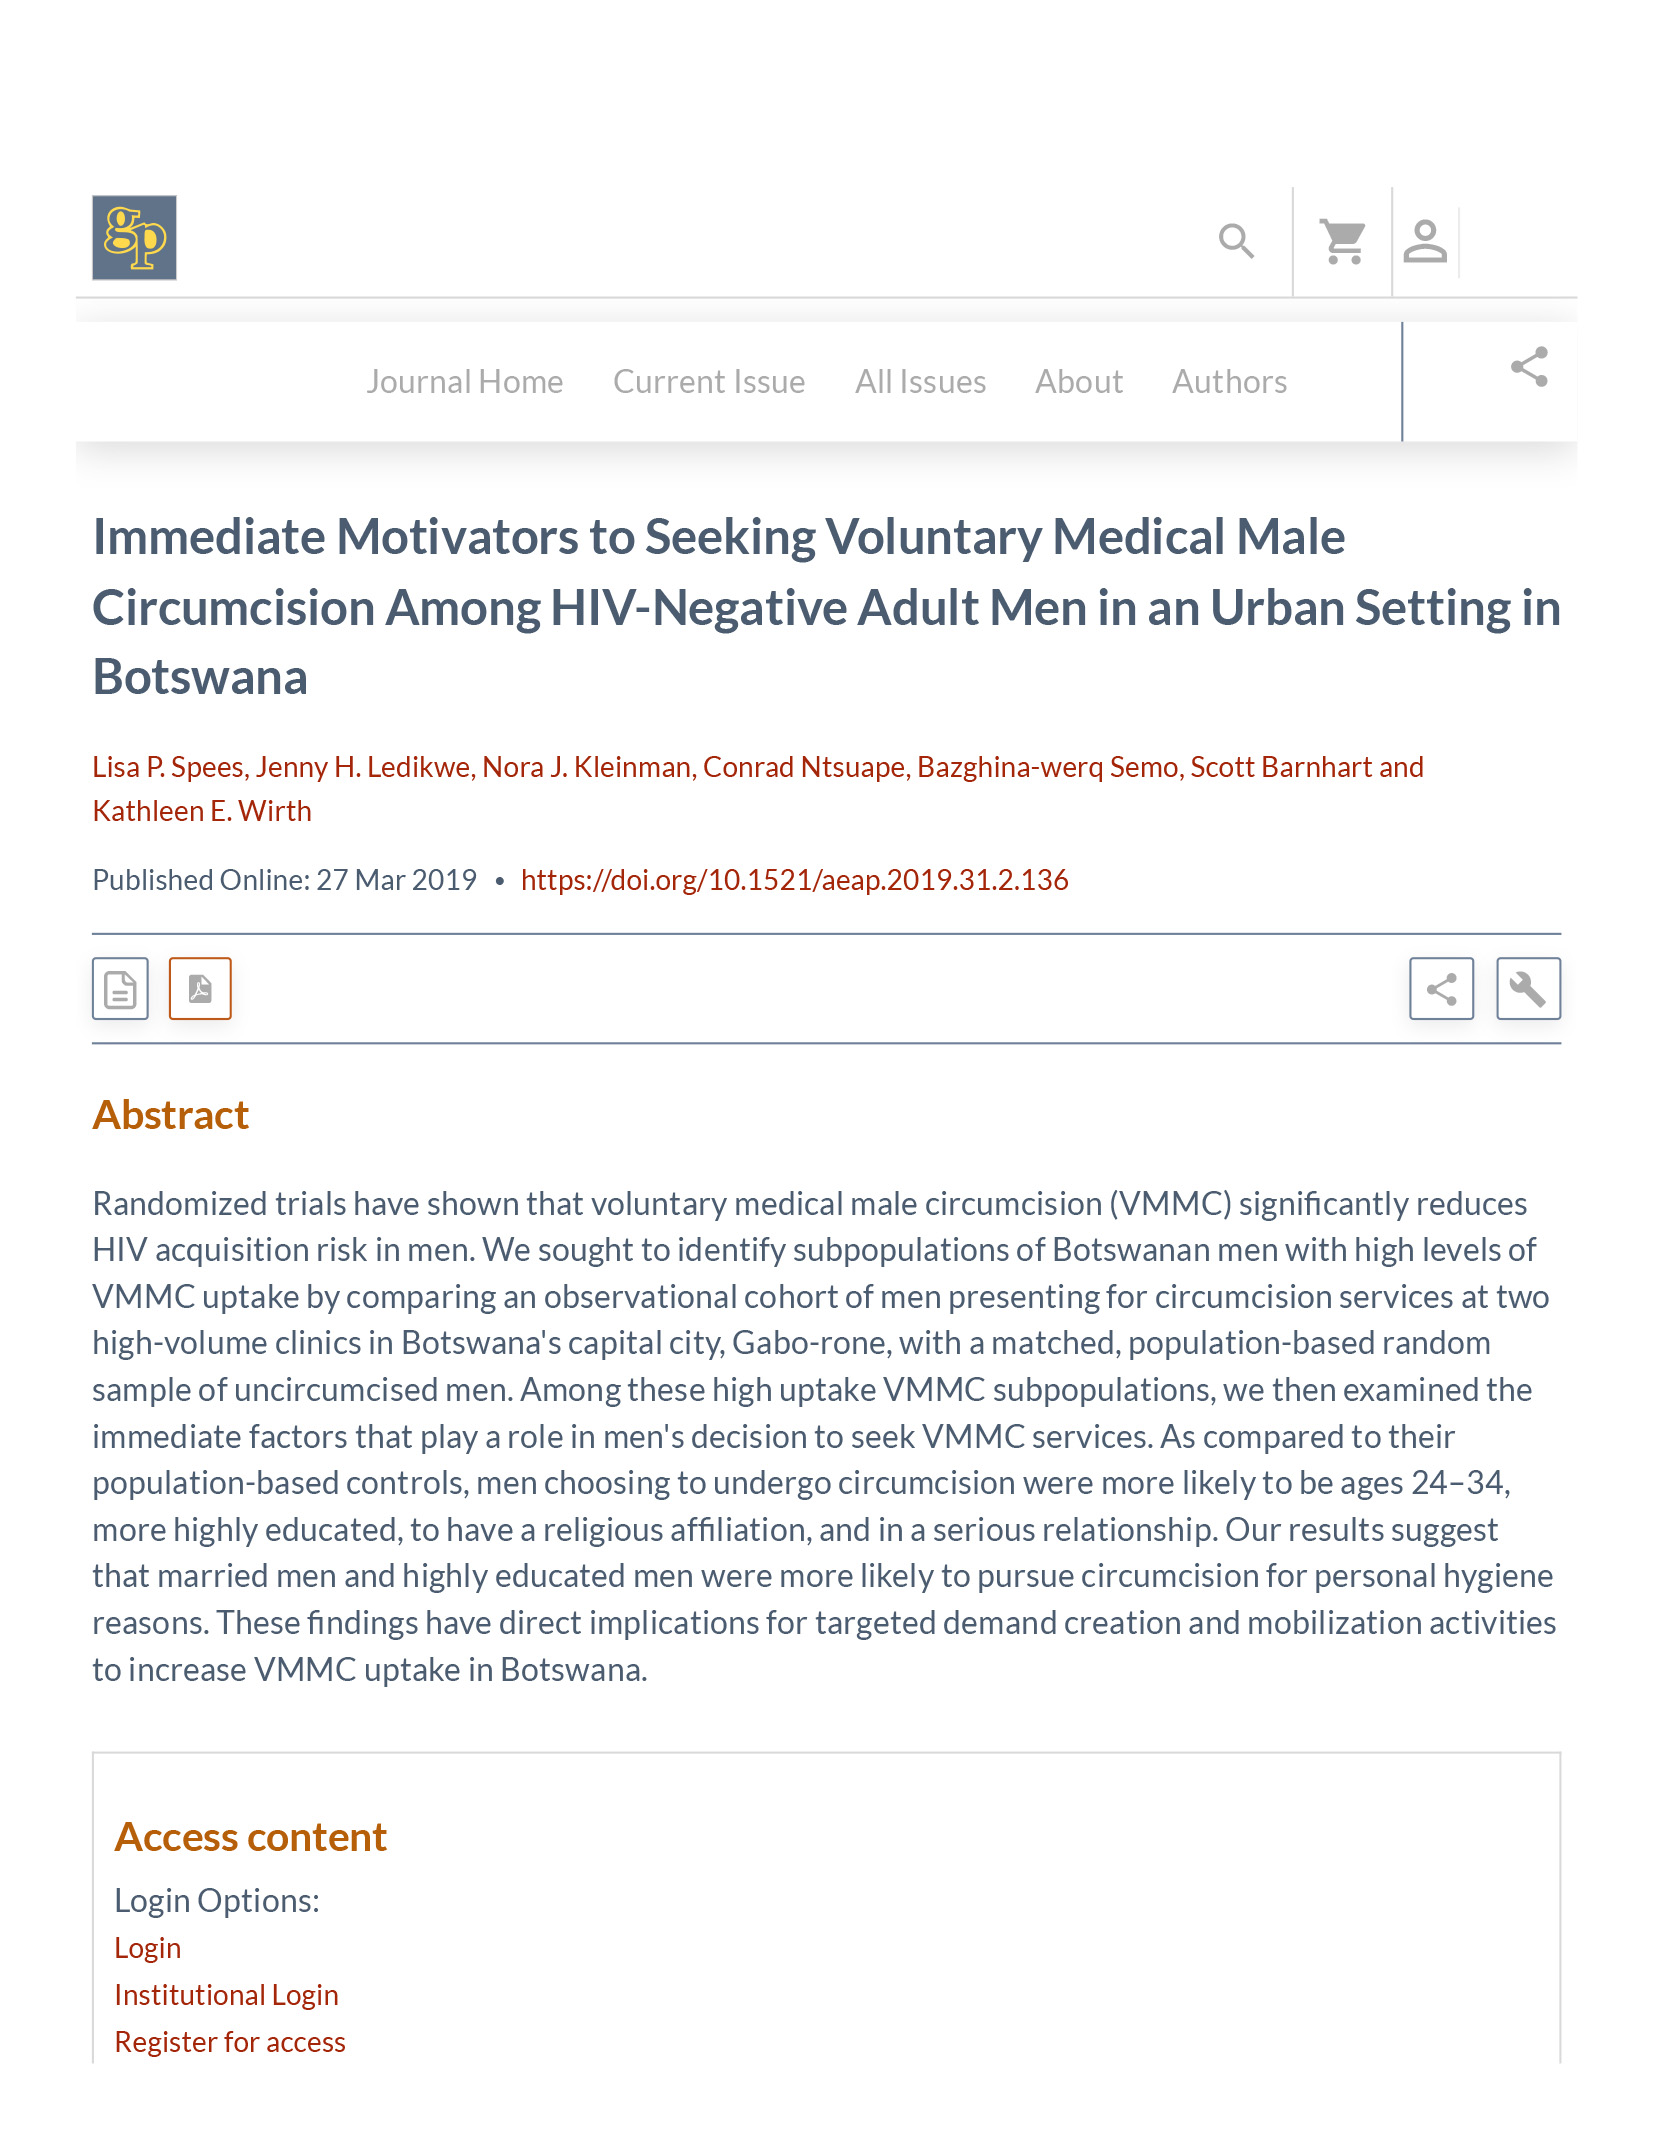 Motivadores imediatos para a procura da circuncisão médica masculina voluntária entre homens adultos seronegativos num ambiente urbano no Botsuana - capa